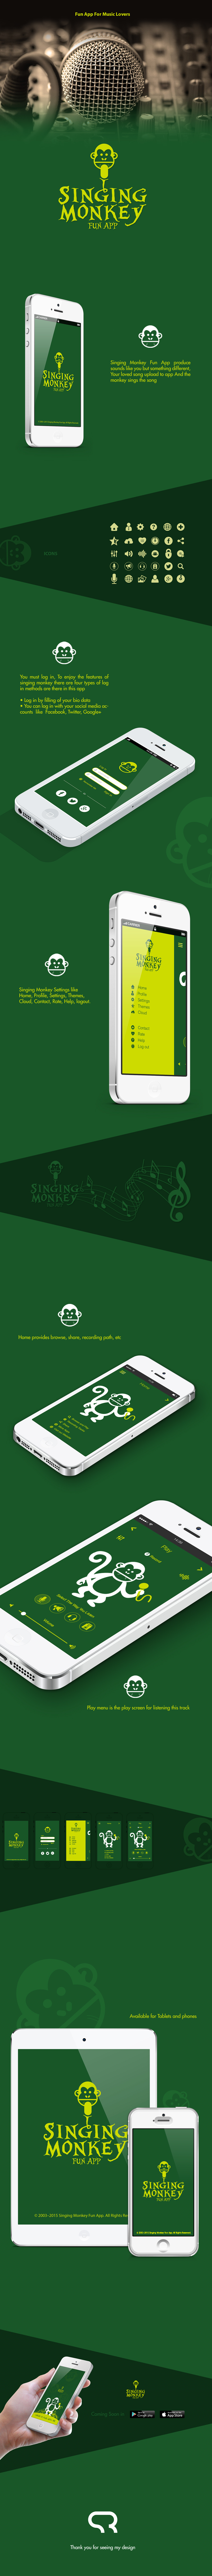 monkey Singing mice UI designing UI green Mobile app